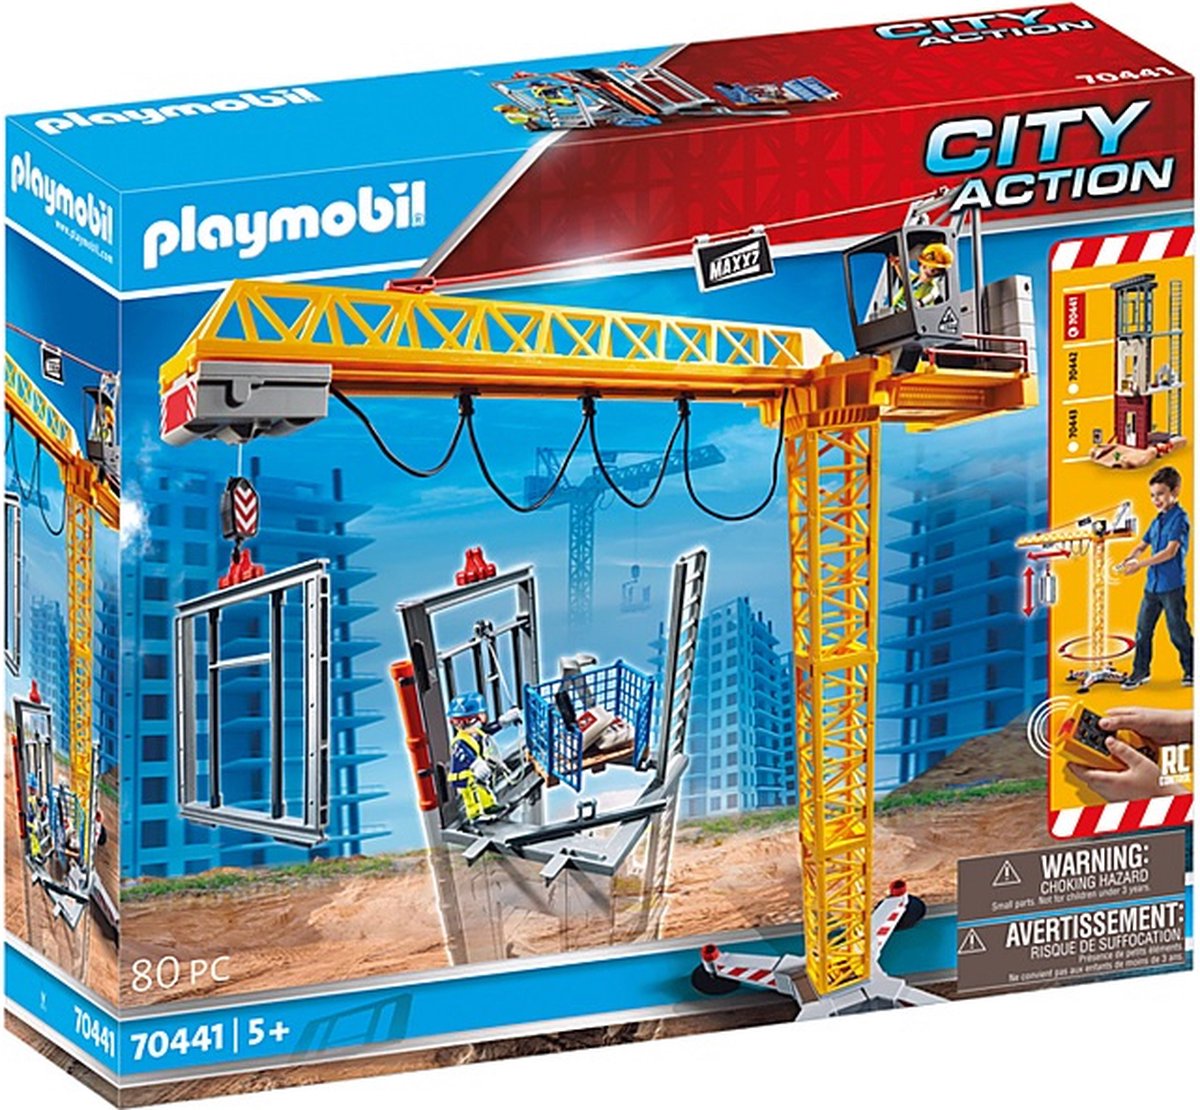 PLAYMOBIL City Action RC bouwkraan met bouwonderdeel - 70441